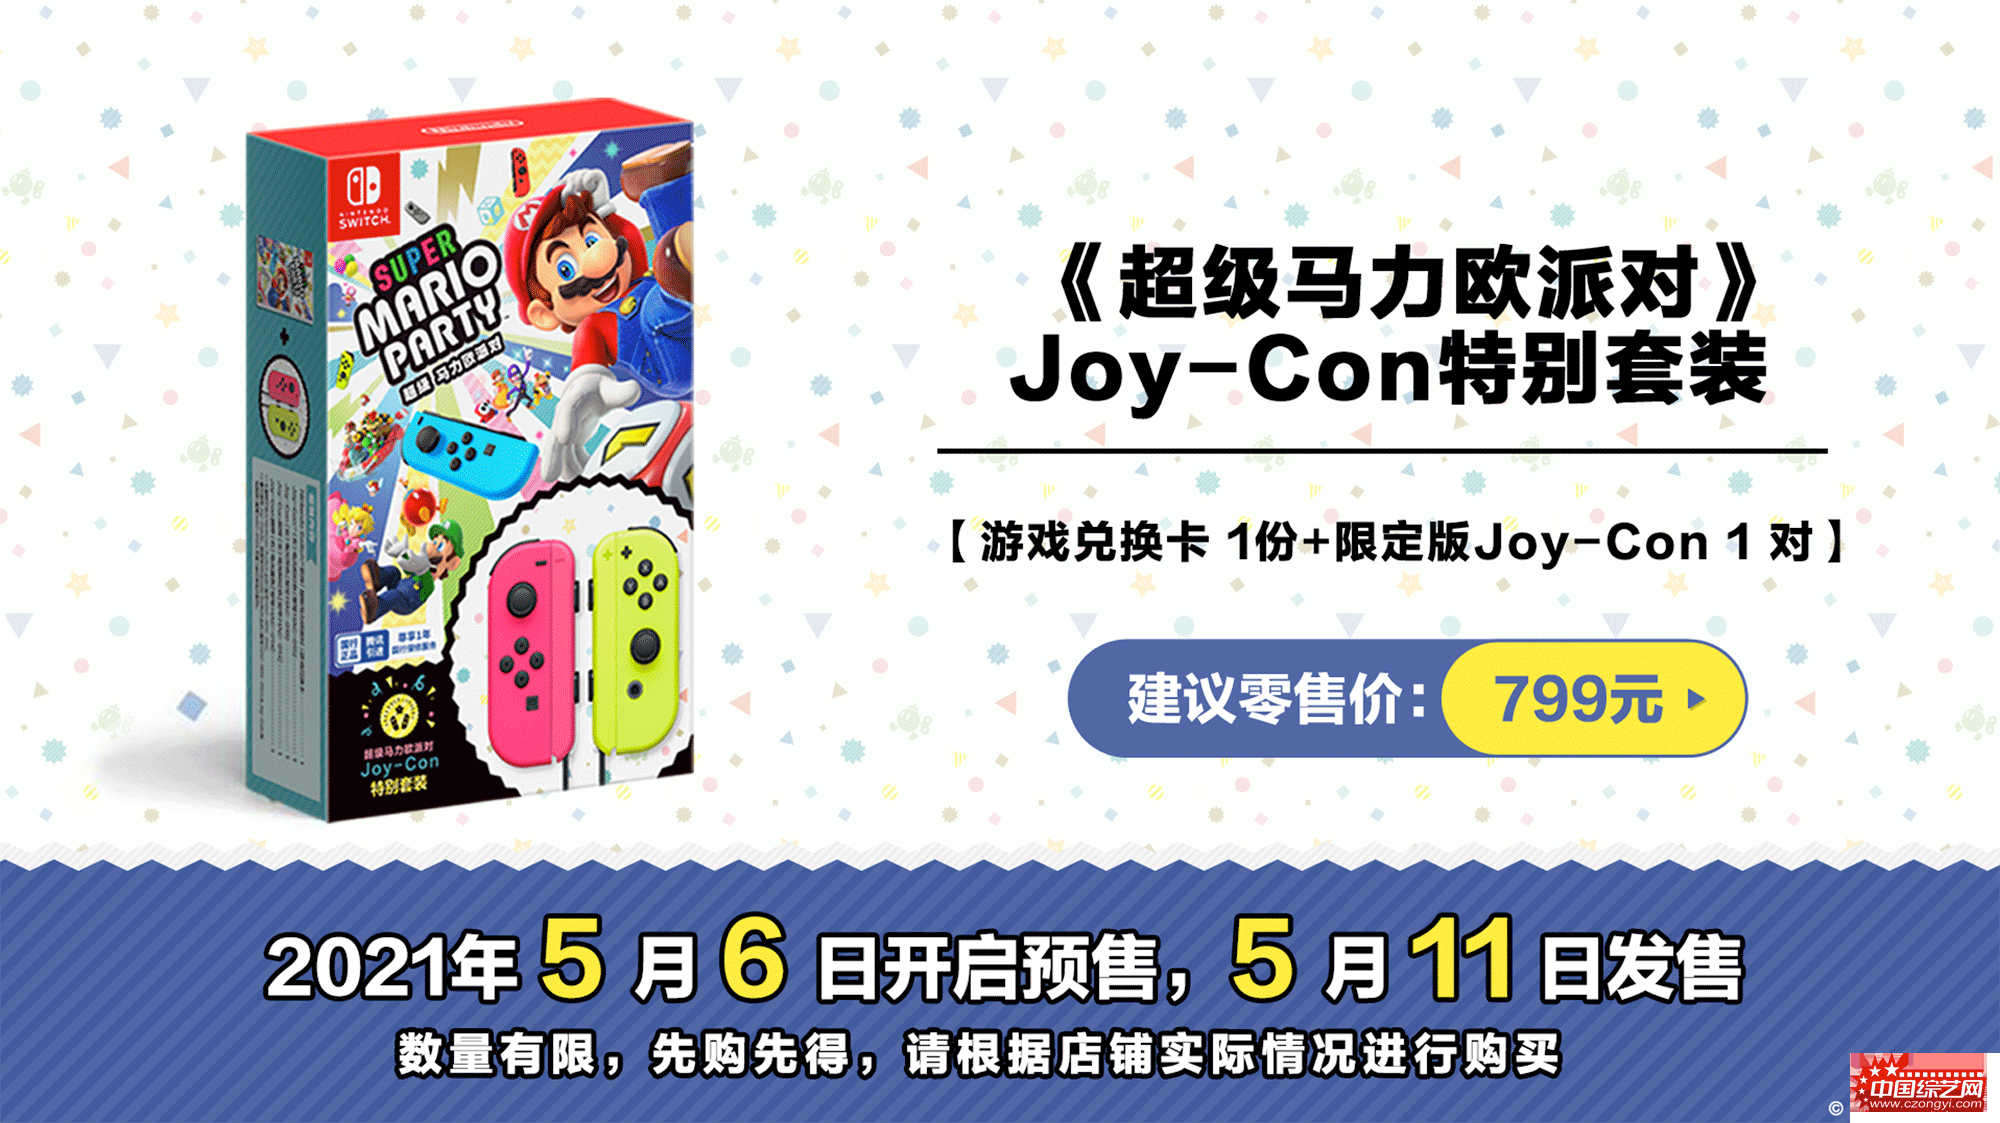 配图4-腾讯引进Nintendo-Switch游戏《超级马力欧派对》Joy-Con特别套装.gif